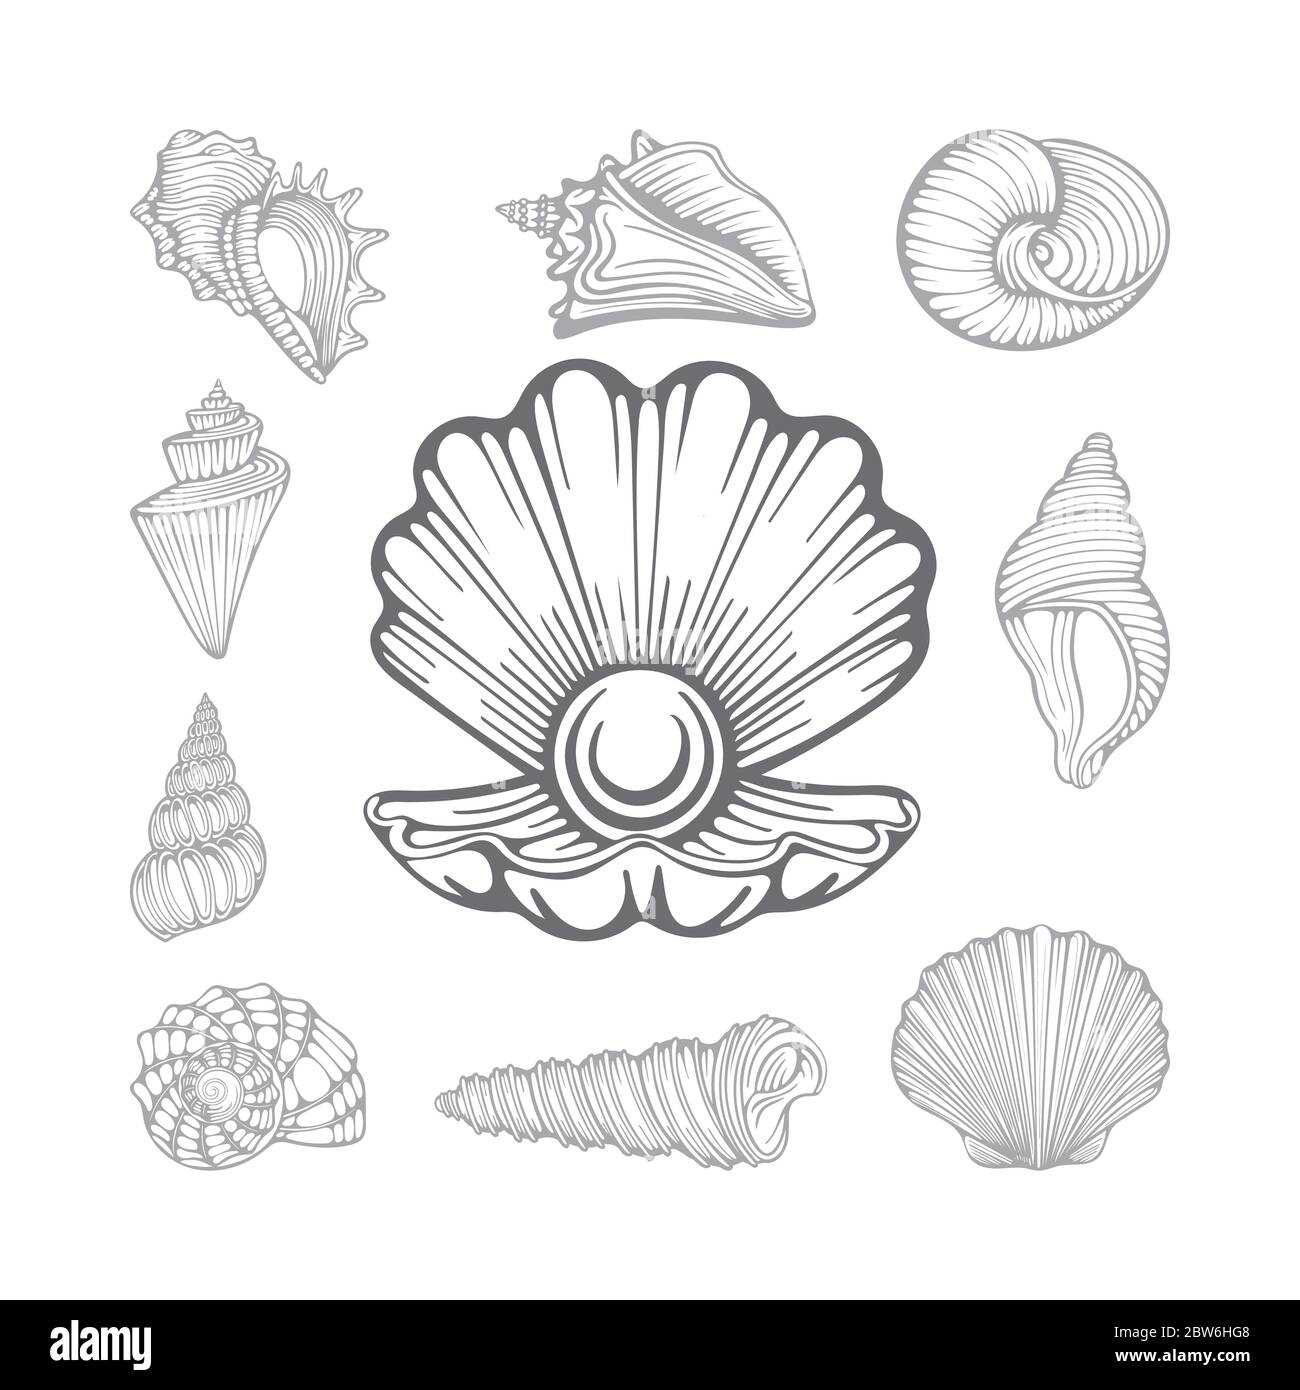 Conchiglia e conchiglie in perla aperte. Diverse conchiglie marine disegnate a mano insieme di illustrazioni vettoriali. Parte del set. Illustrazione Vettoriale